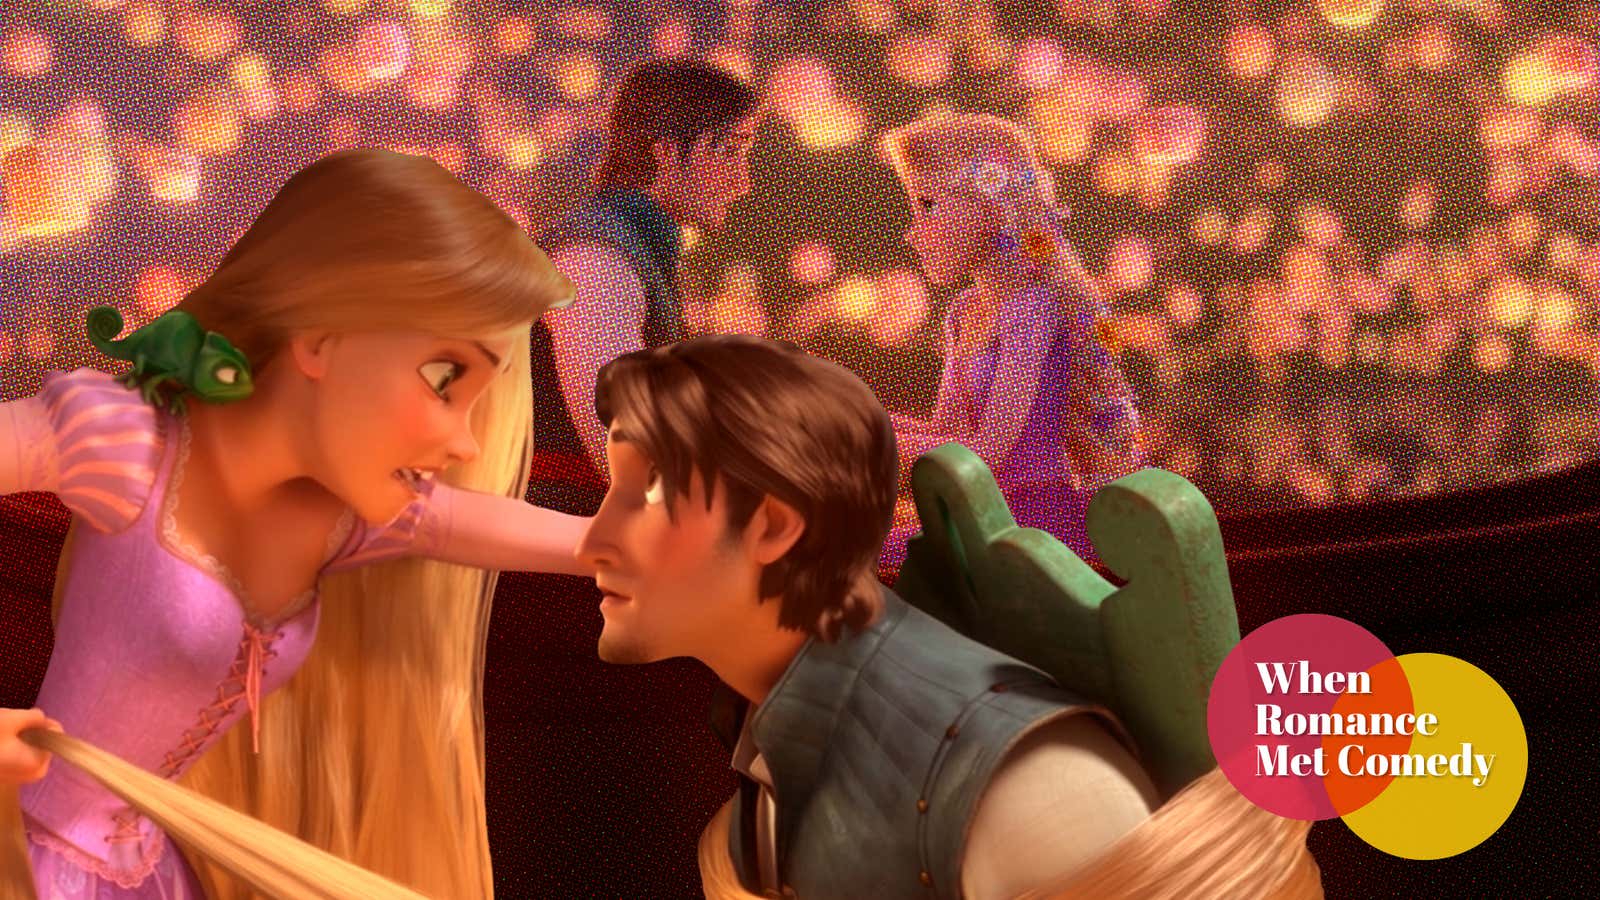 10 years ago, Tangled reinvigorated the Disney princess story